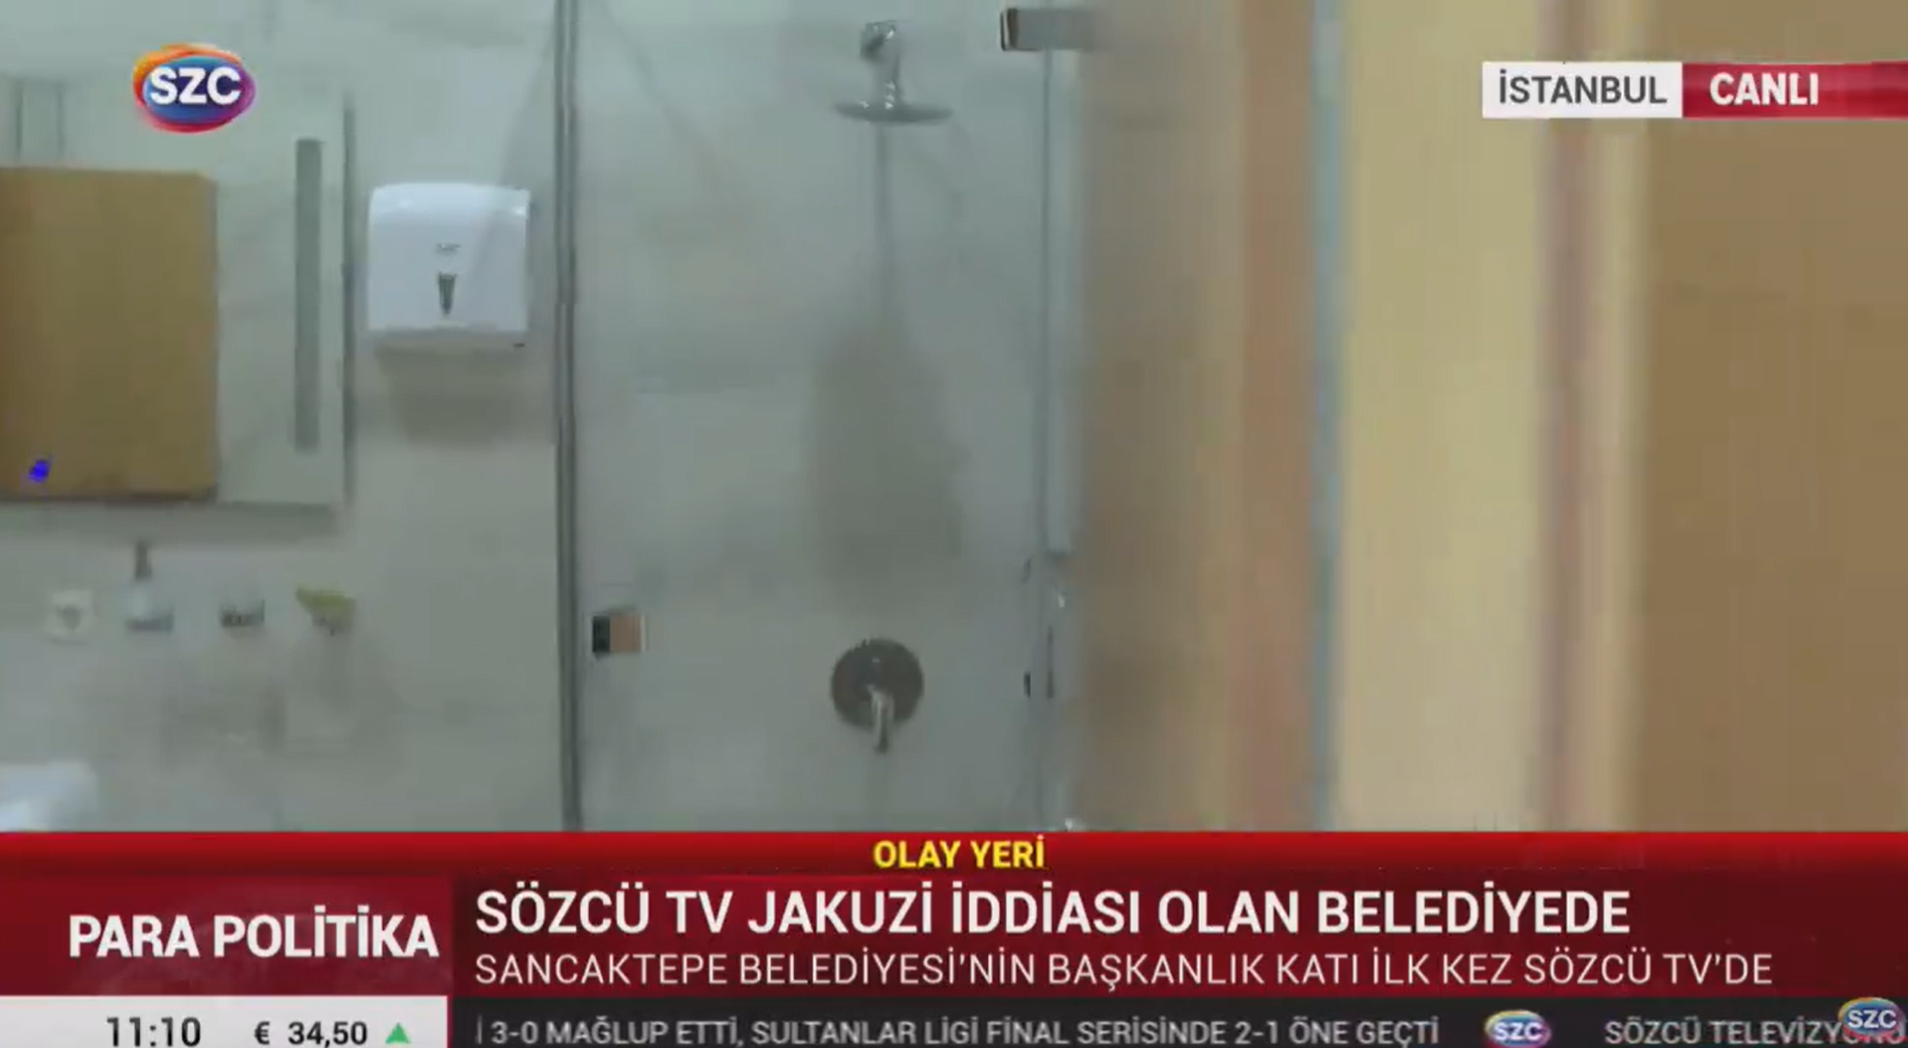 Sancaktepe Belediyesi'ndeki lüks banyolar görüntülendi